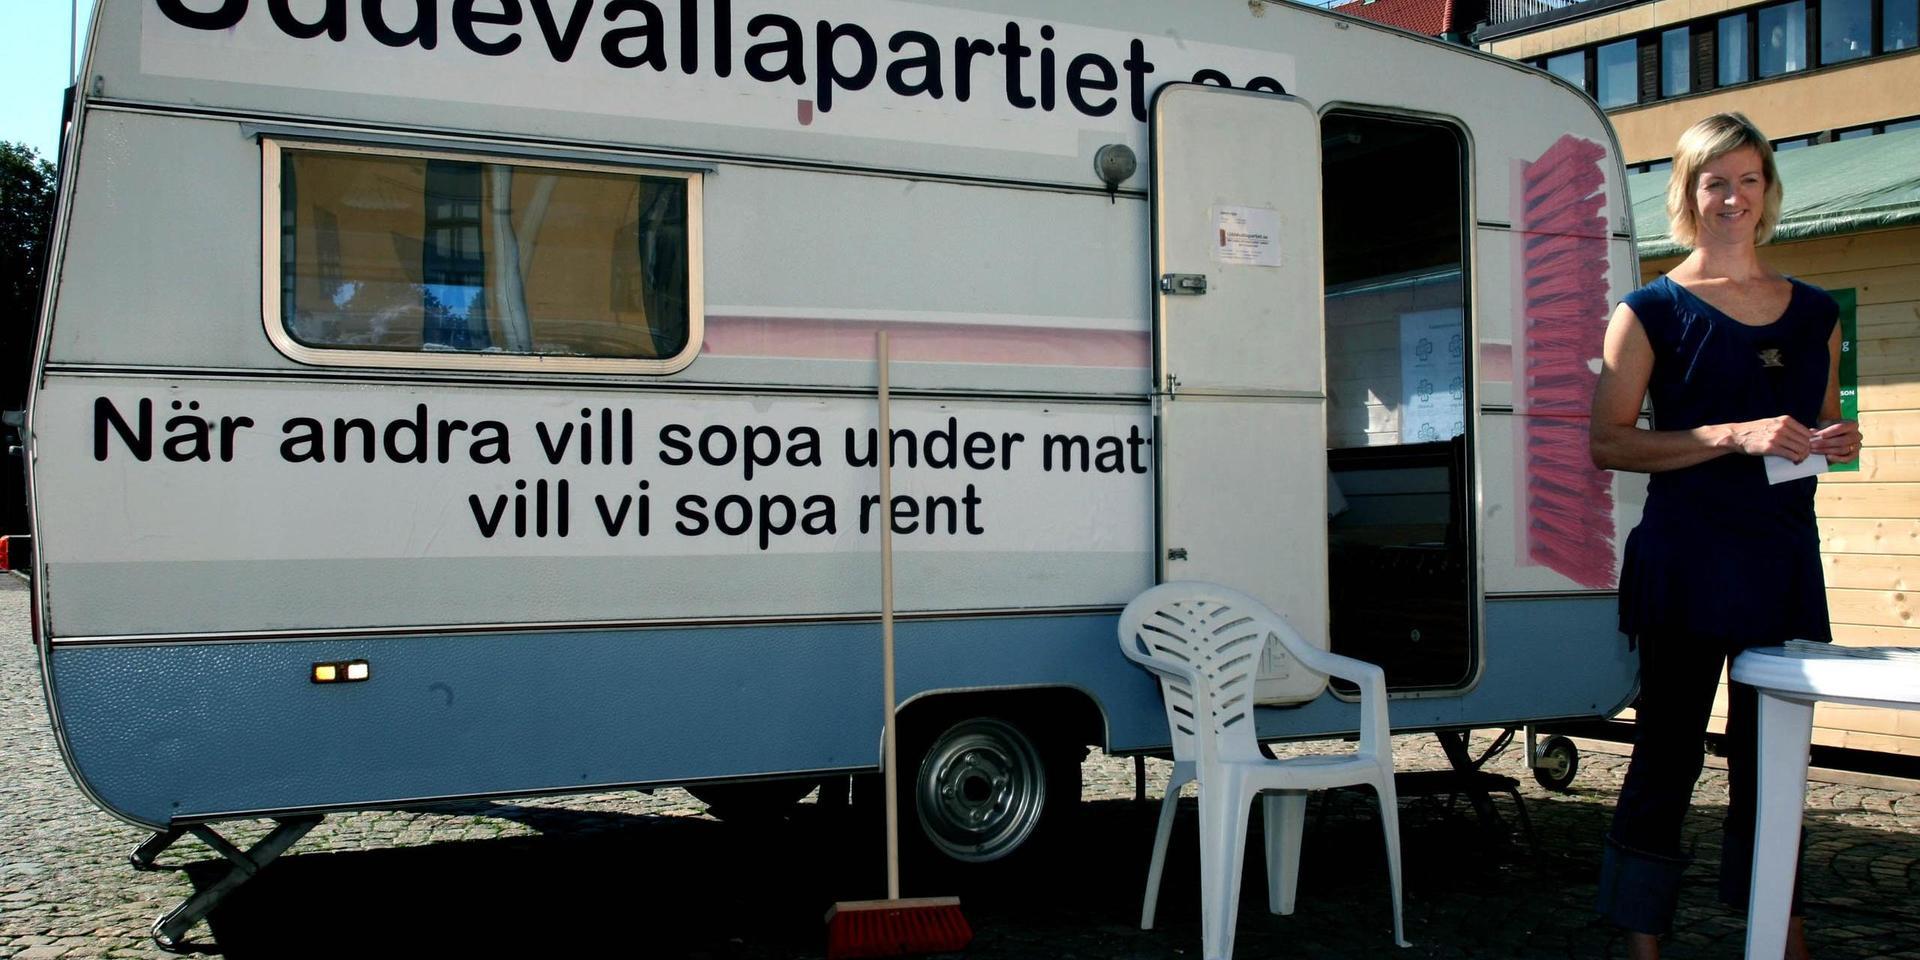 Uddevallapartiet kampanjade i valet 2006.